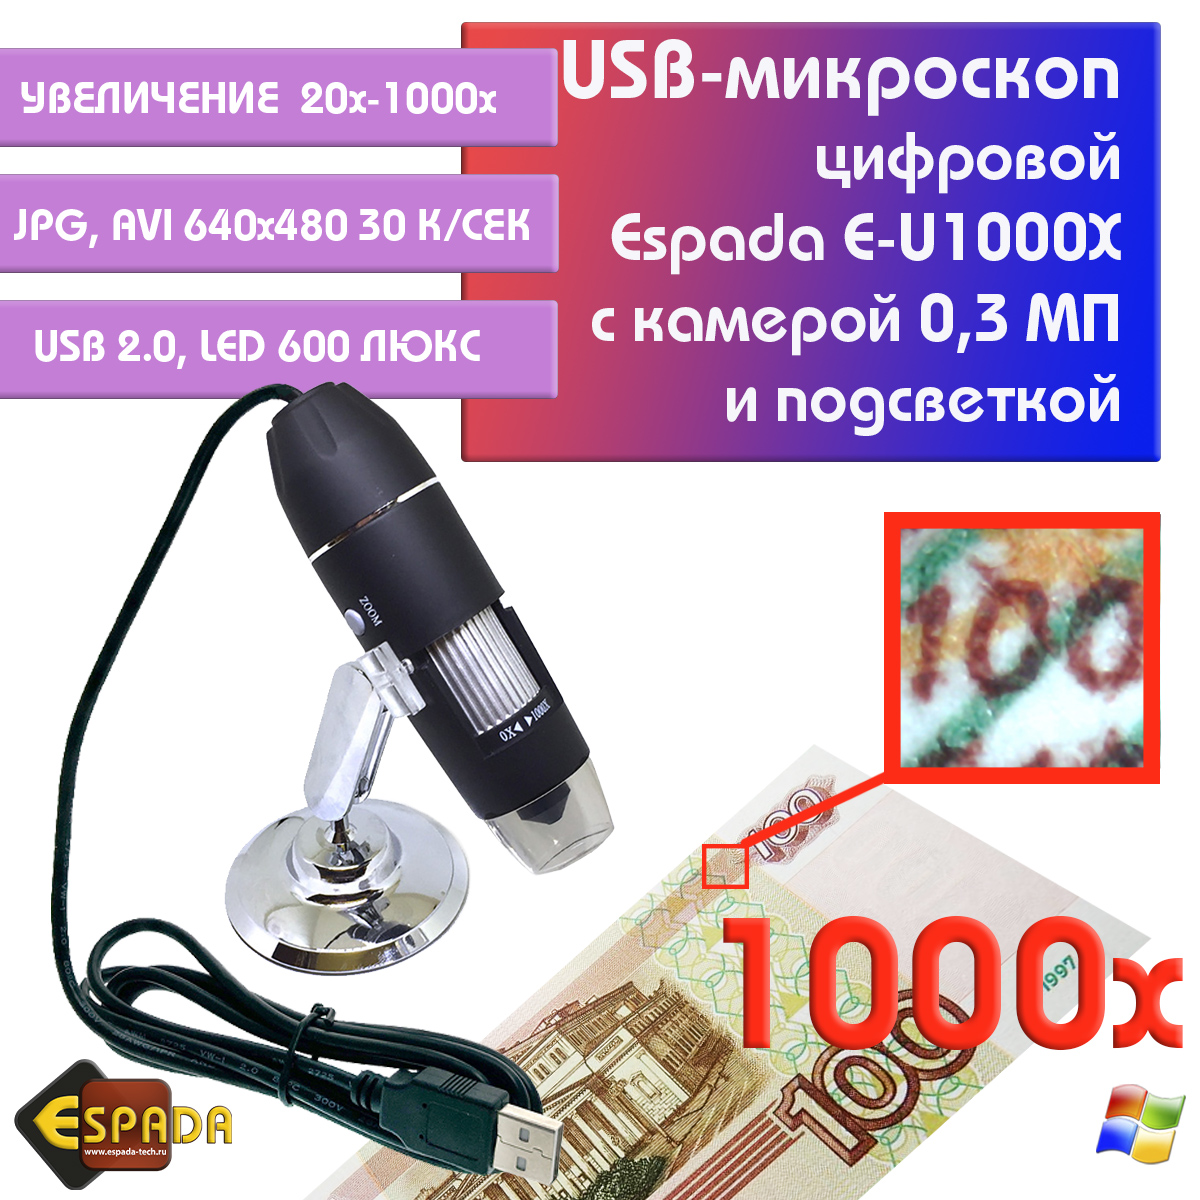 Портативный цифровой USB-микроскоп Espada E-U1000X c камерой 0,3 МП и увеличением 1000x видеокарта afox geforce gt 730